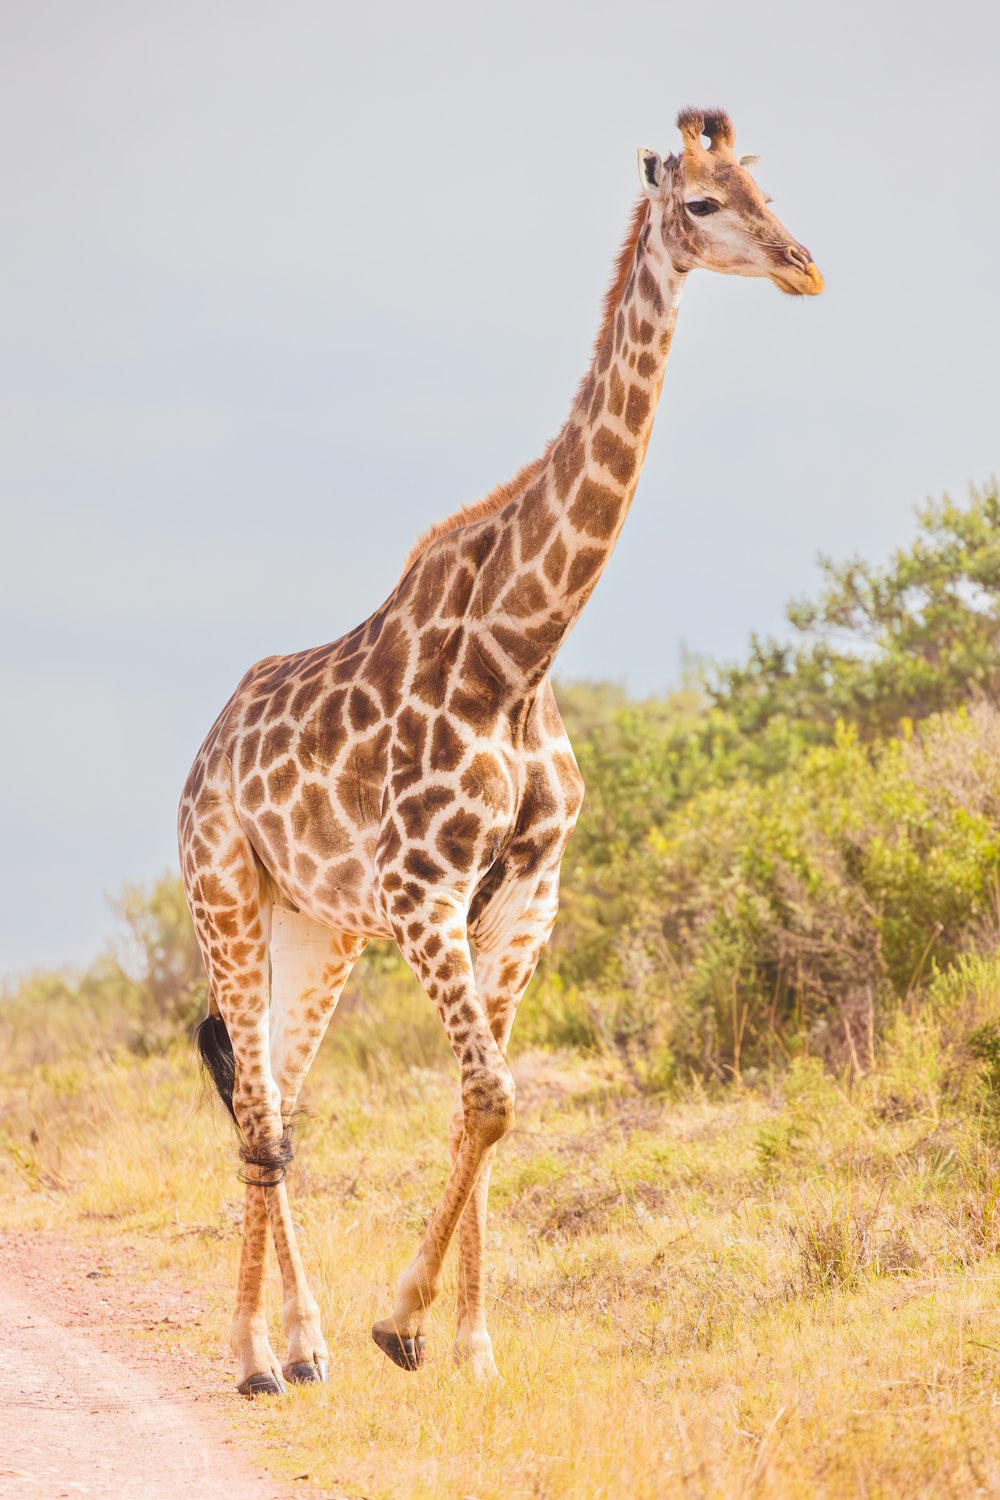 Una jirafa camina por un camino de tierra